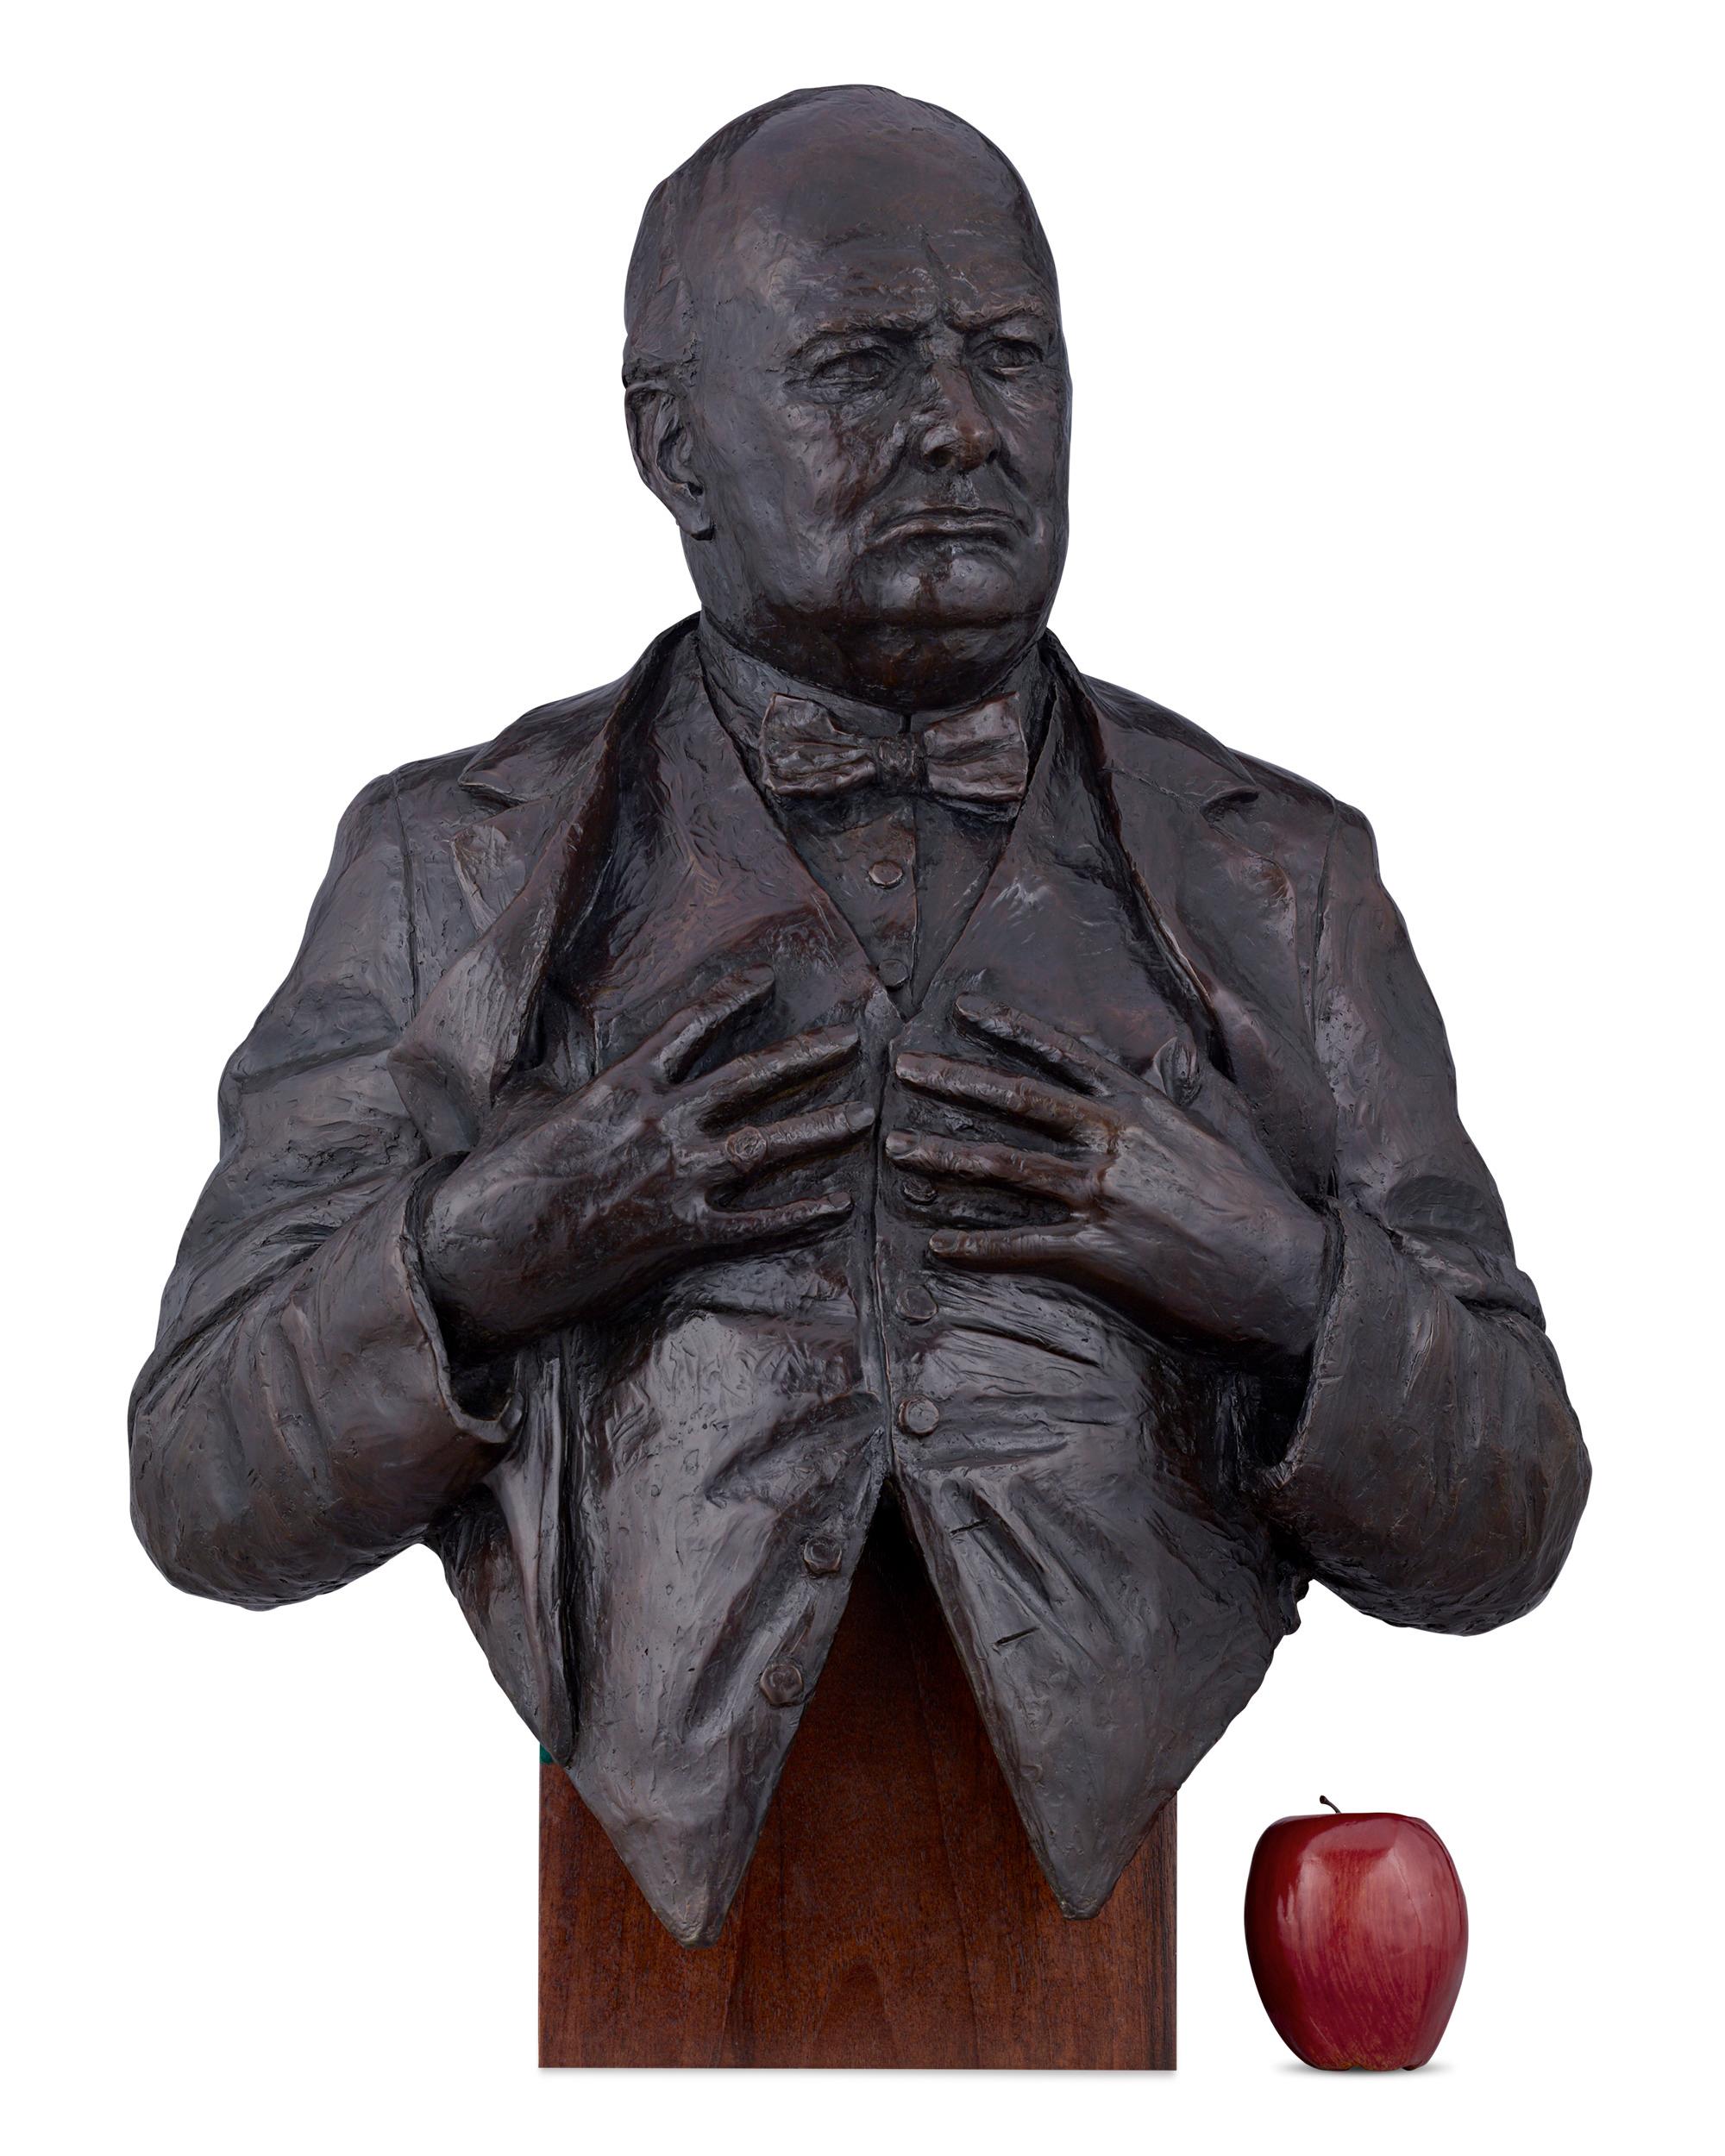 Sir Winston Churchill - Other Art Style Sculpture by Vivien Mallock